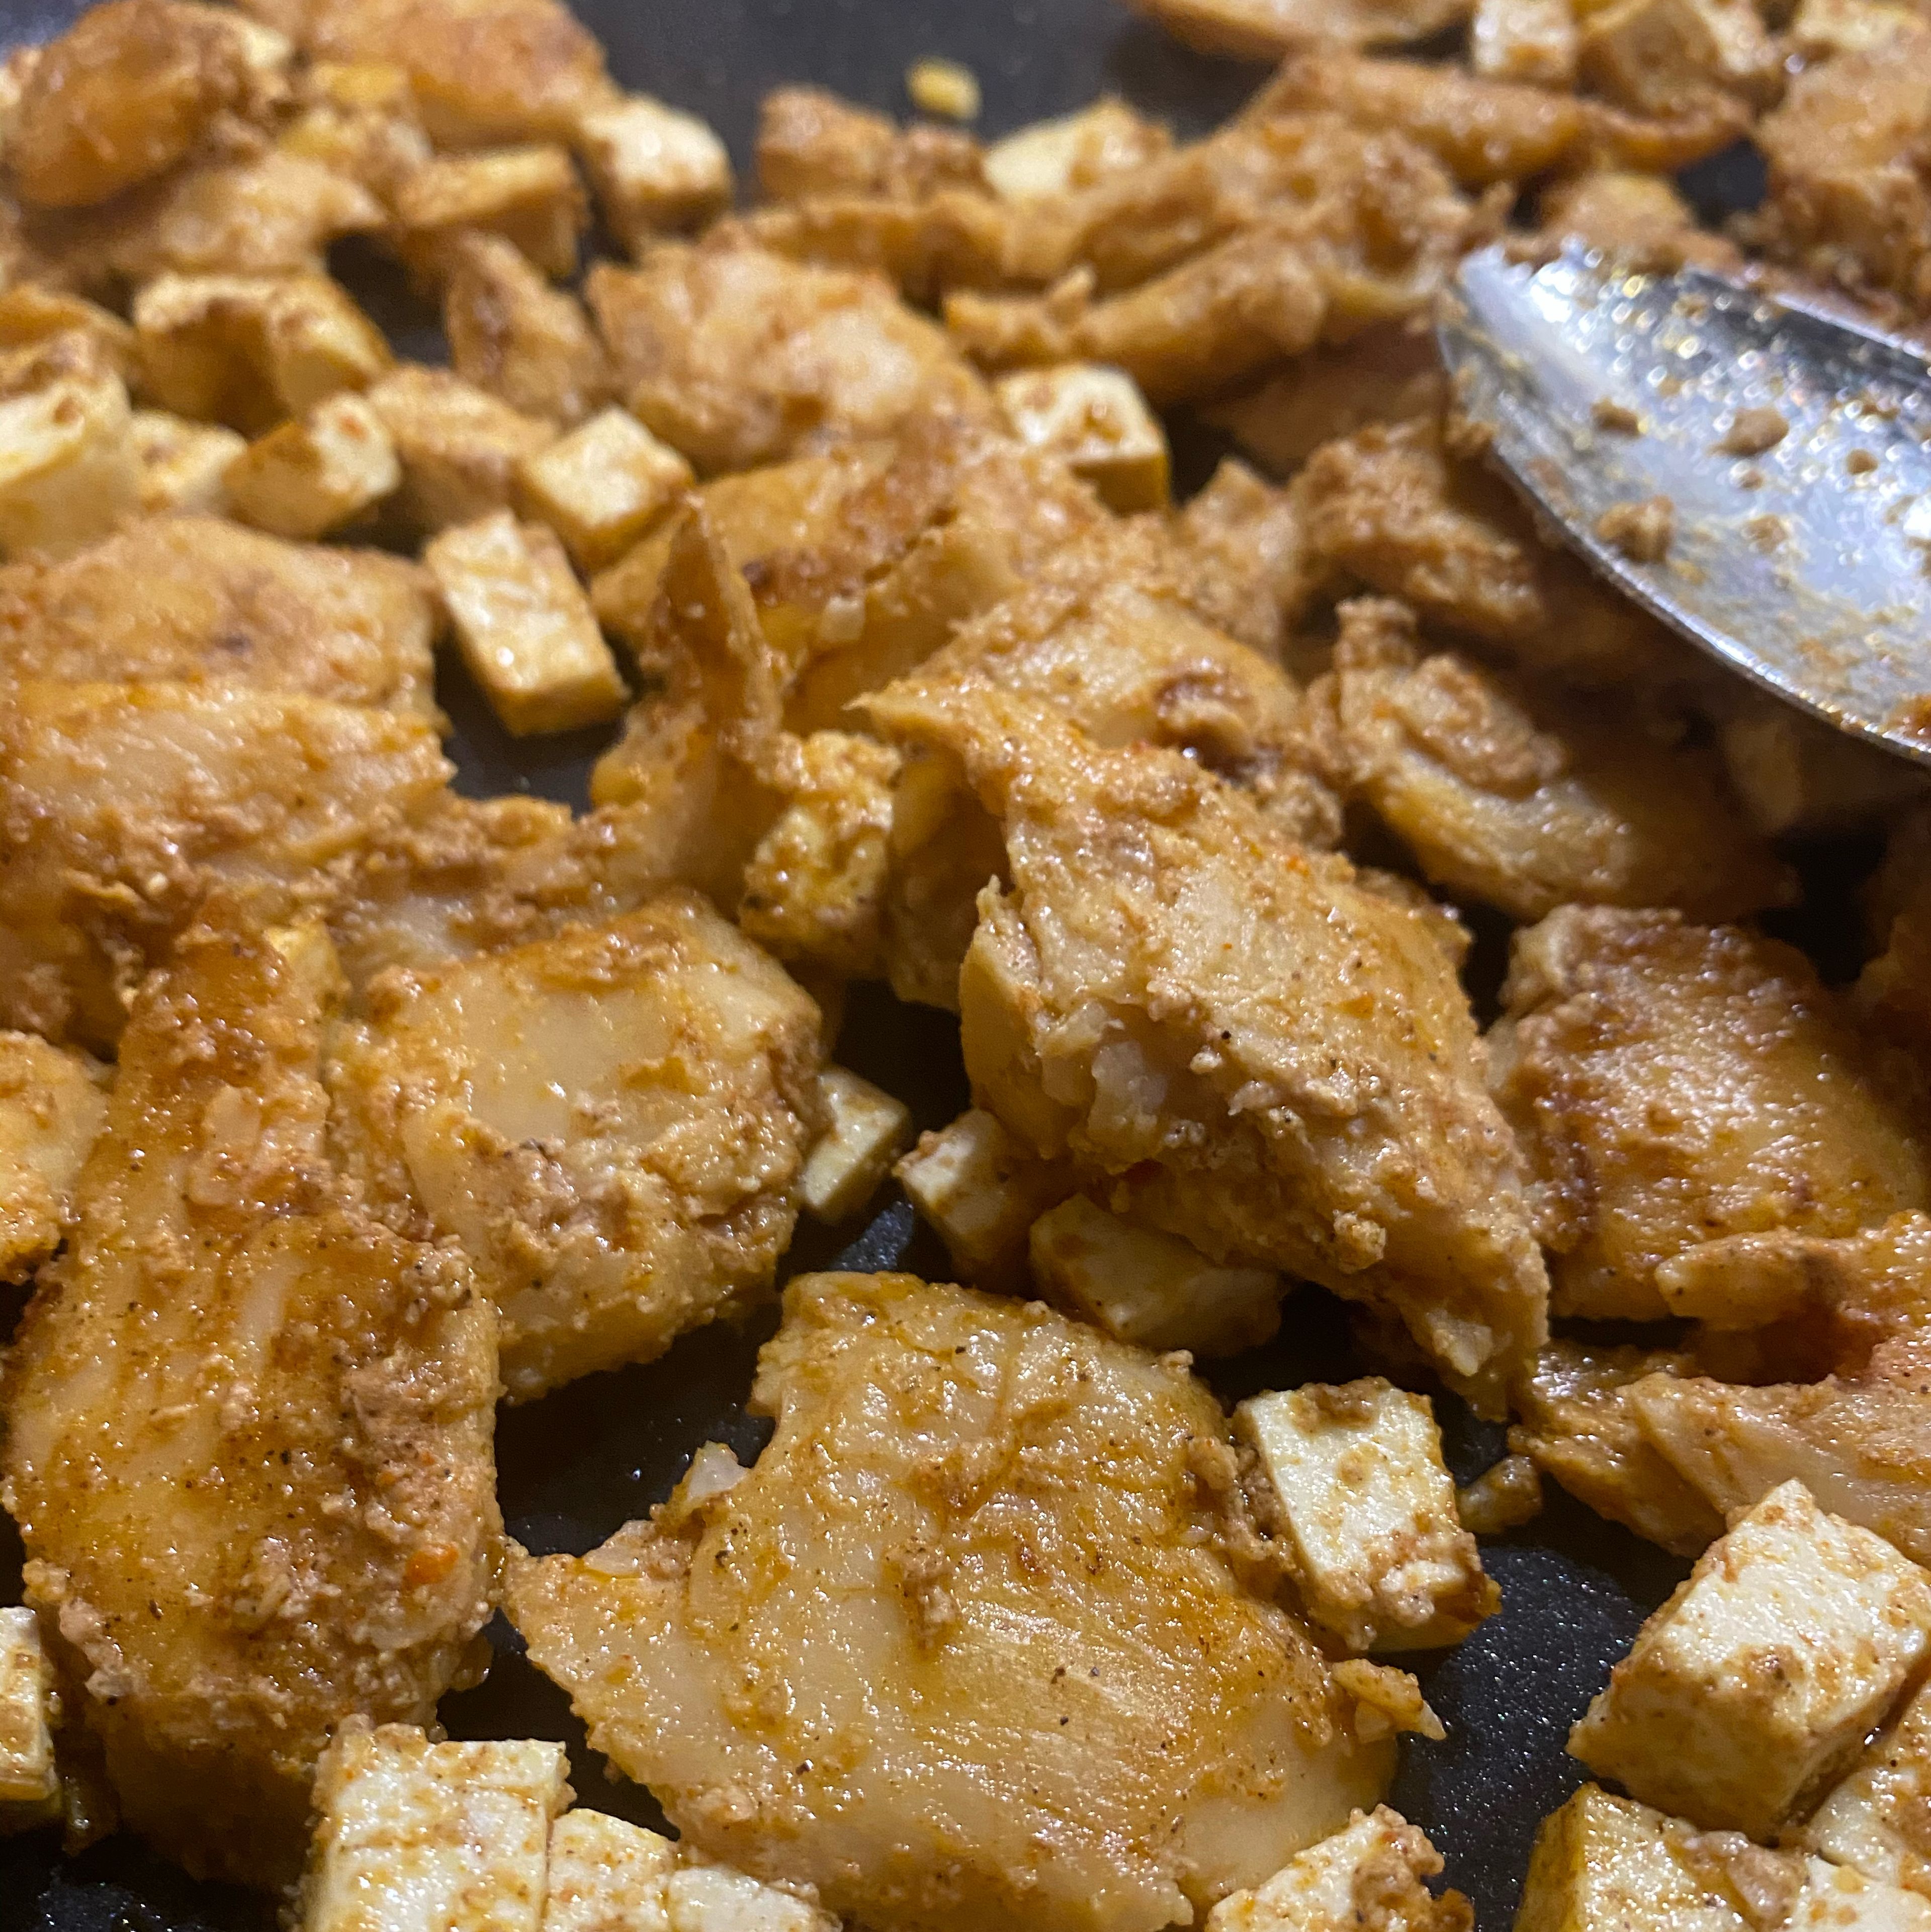 Marinierten Tofu und „Chicken“ in einer Pfanne von beiden Seiten anbraten, bis alles etwas Farbe/Röstaroma bekommen hat. Anschließend in eine Schüssel umfüllen.